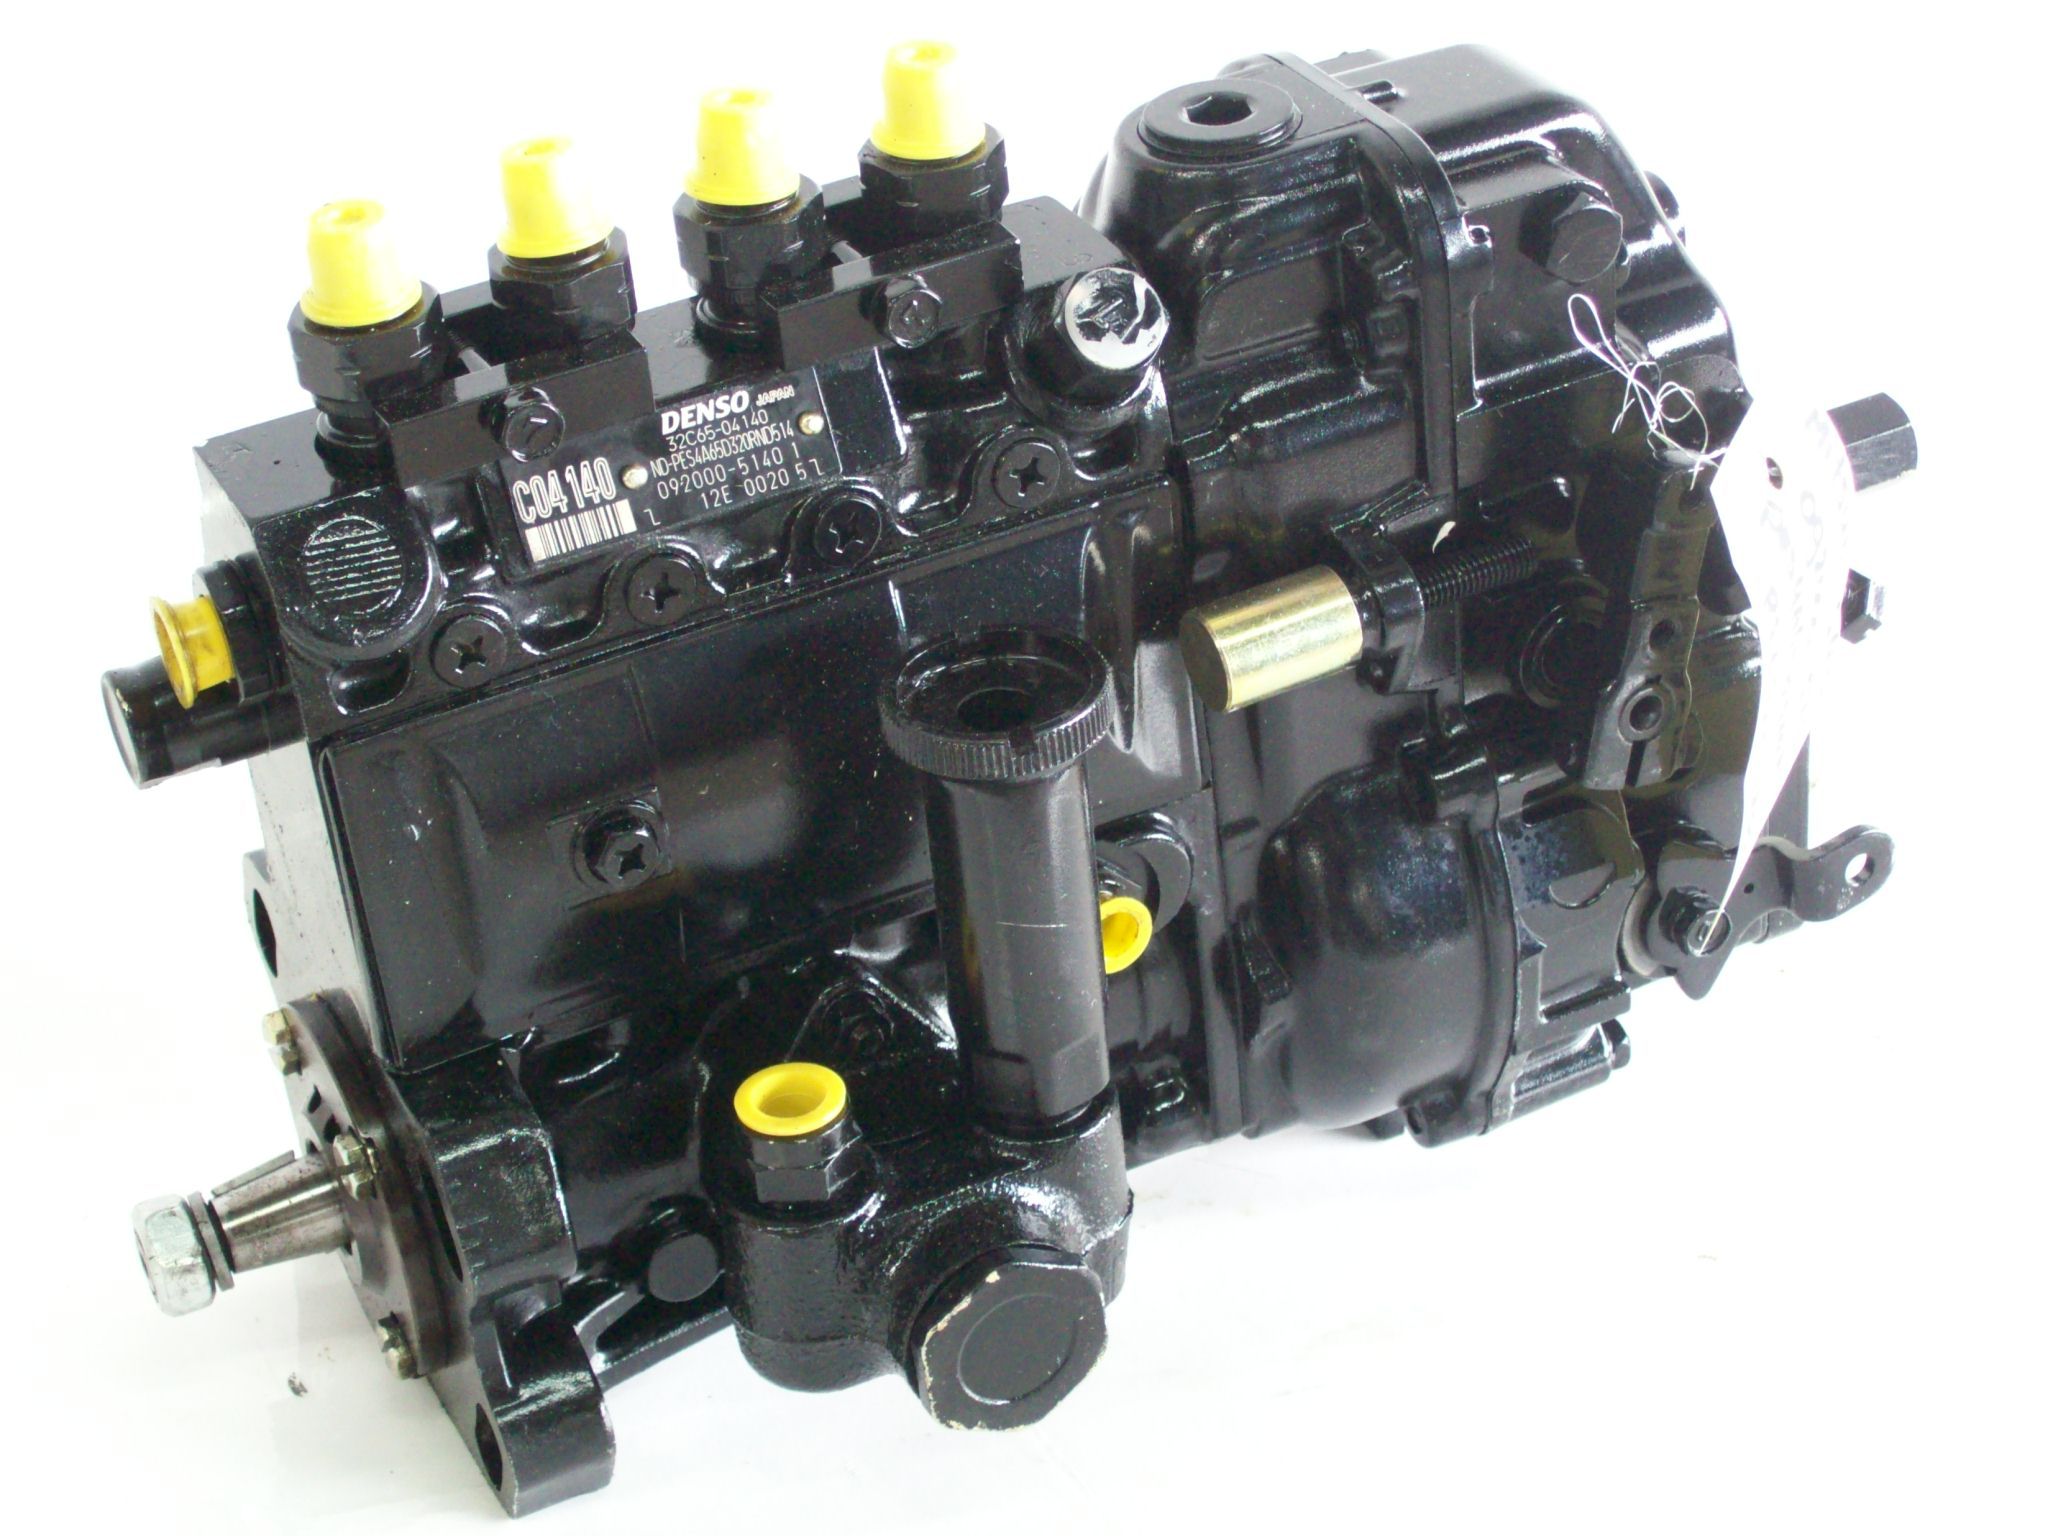 Fuel pumps - MITSUBISHI - Dieselservice Stokking BV - gespecialiseerd in de  dieselmotor en zijn toepassingen